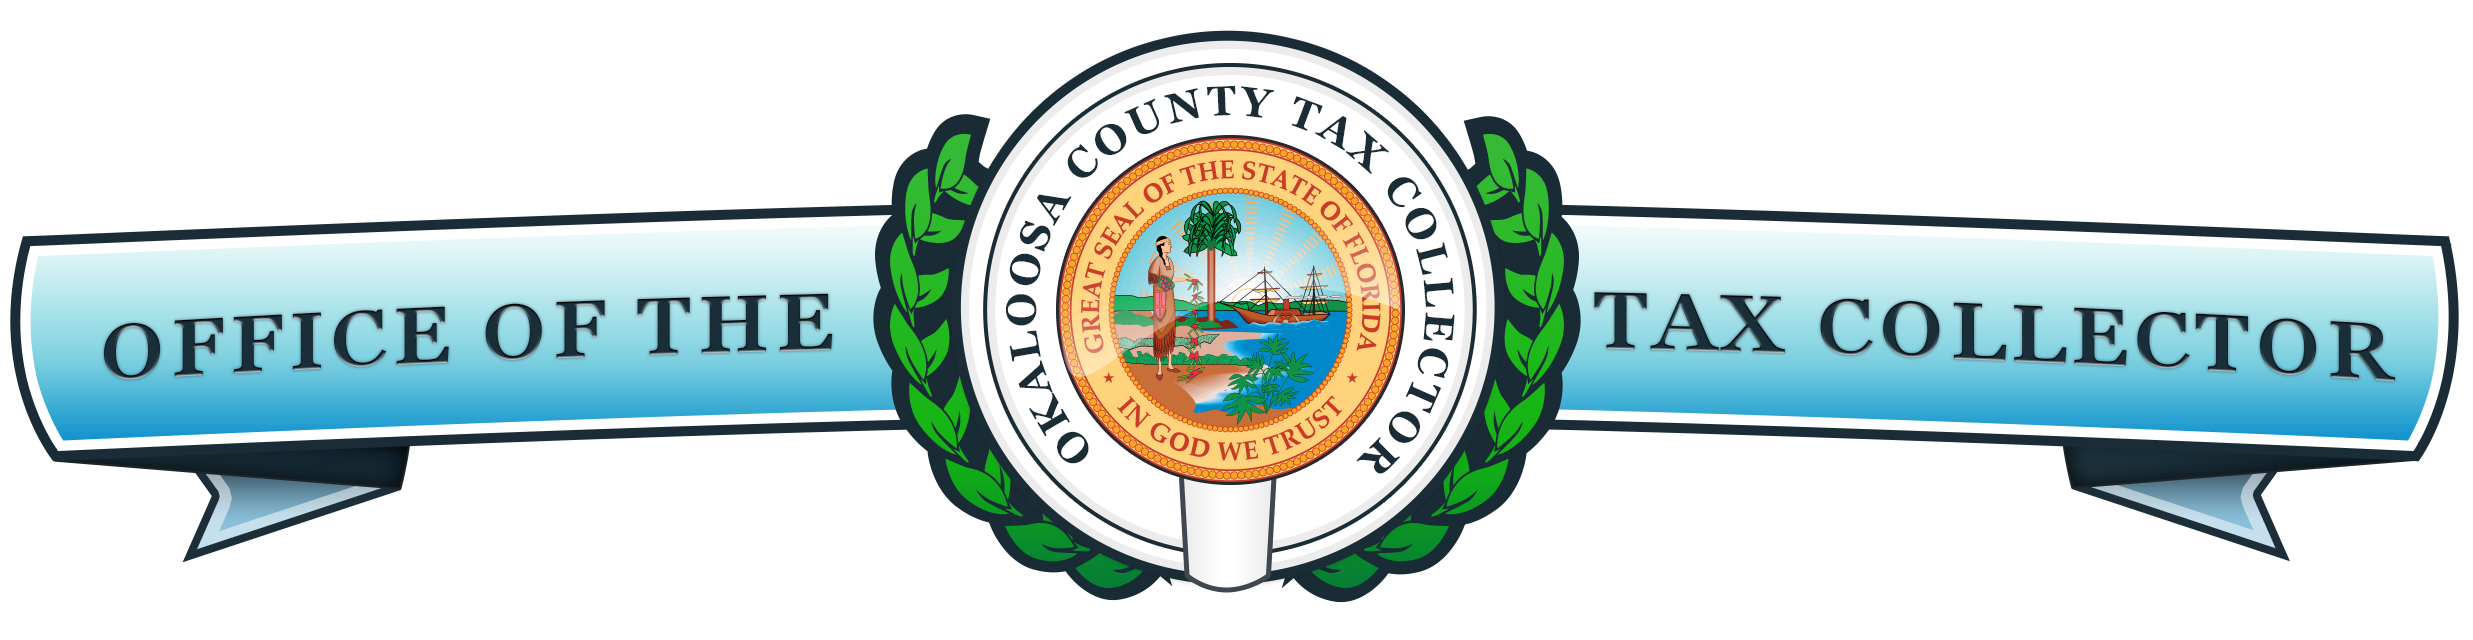 Okaloosa County Tax Collector